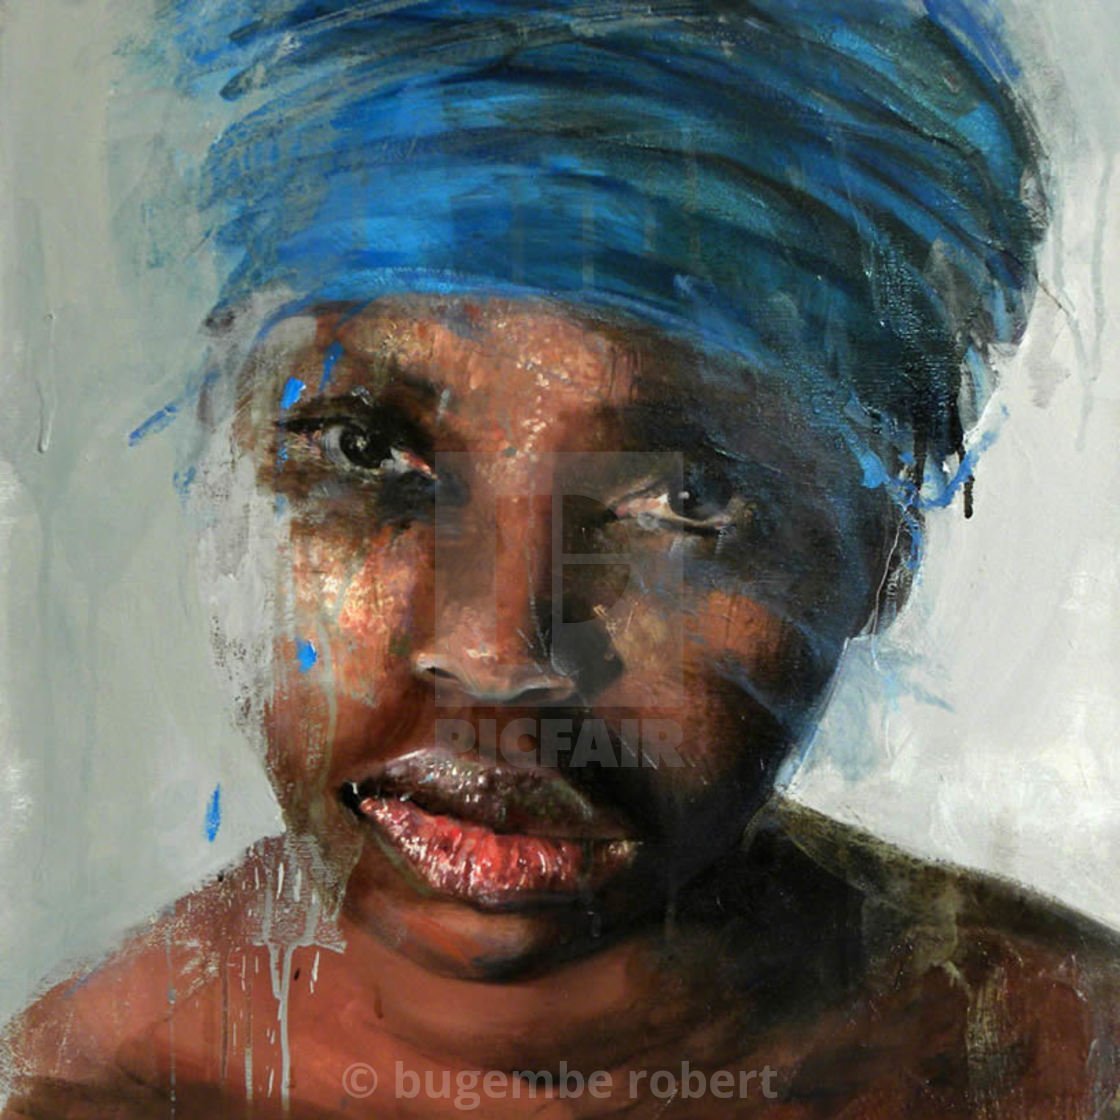 Бьют негритянок. Негритянка живопись. Чернокожая женщина живопись. Африканская живопись. Портрет негритянки.